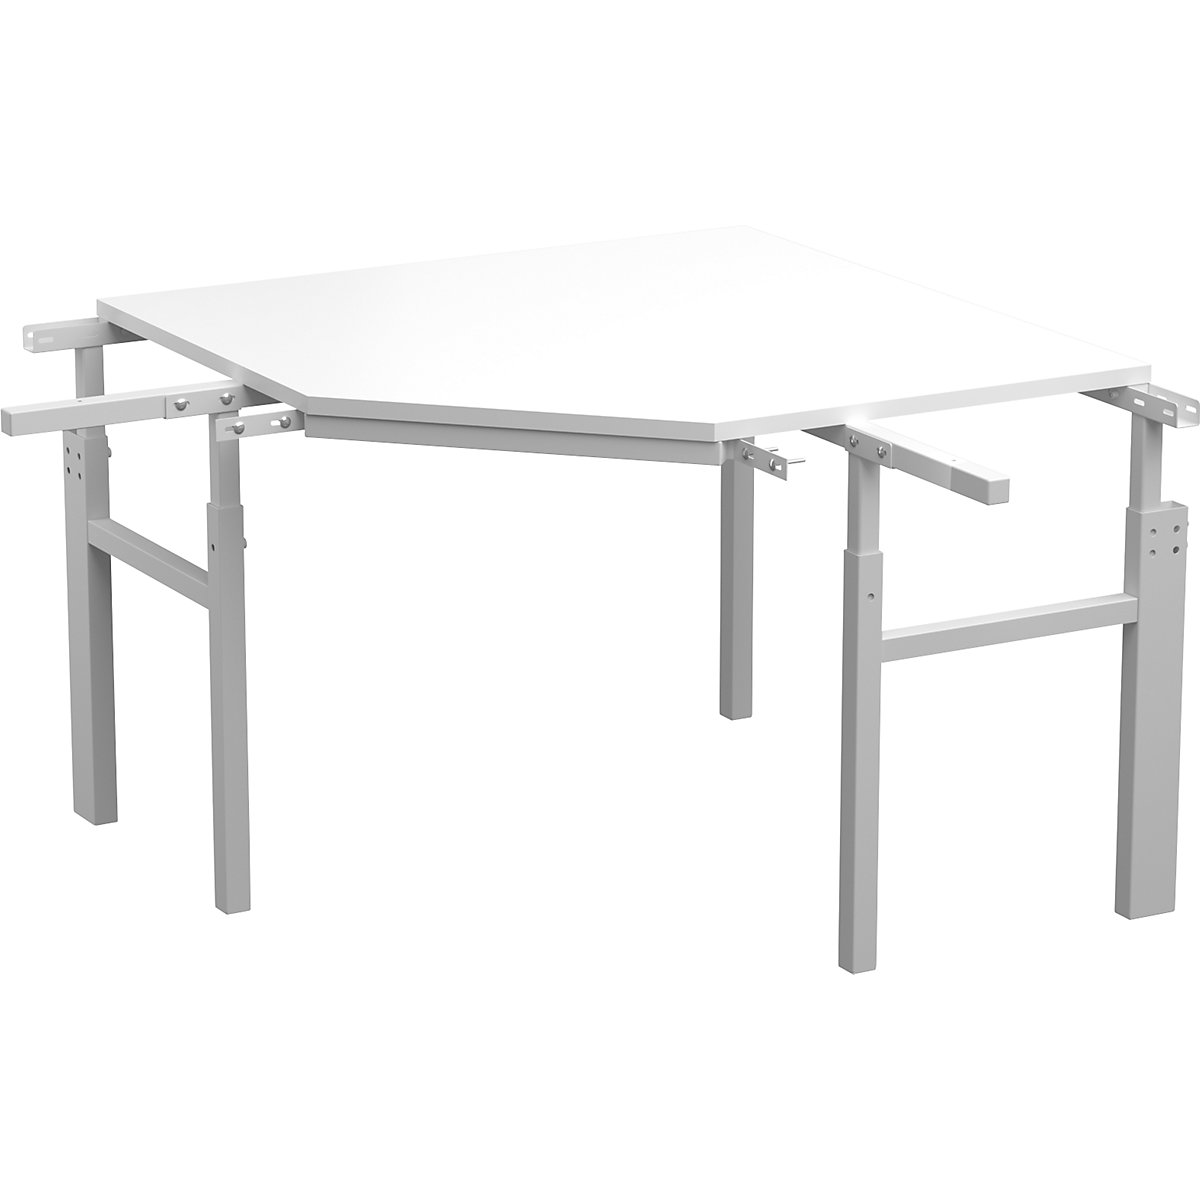 Mesa esquinera de la serie TP – Treston, ajuste de altura manual, para 2 mesas básicas con estante superior, profundidad 700 mm-2